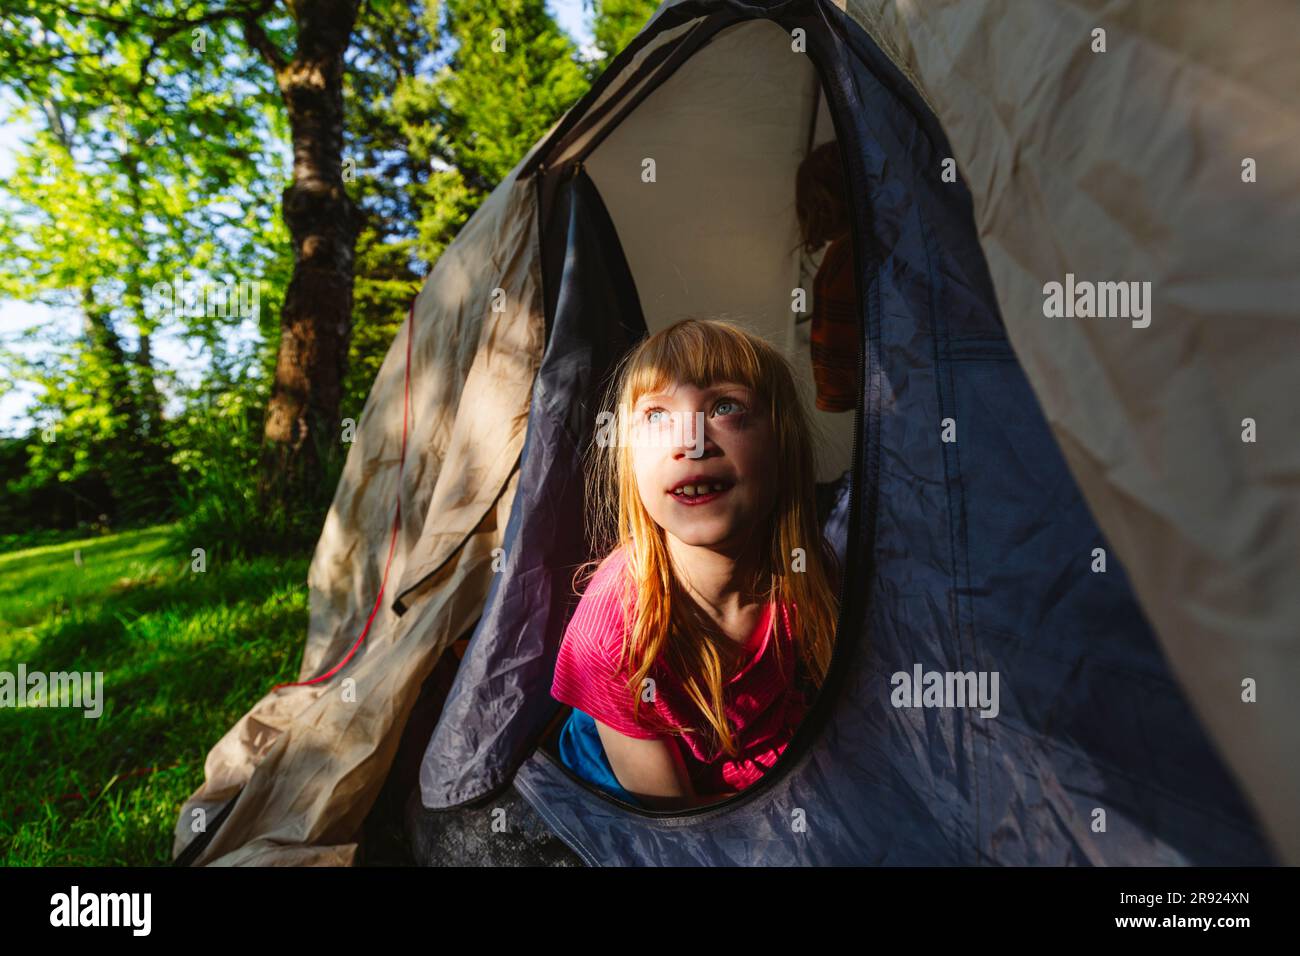 Rücksichtsvolles, erdbeerblondes Mädchen, das im Zelt sitzt Stockfoto